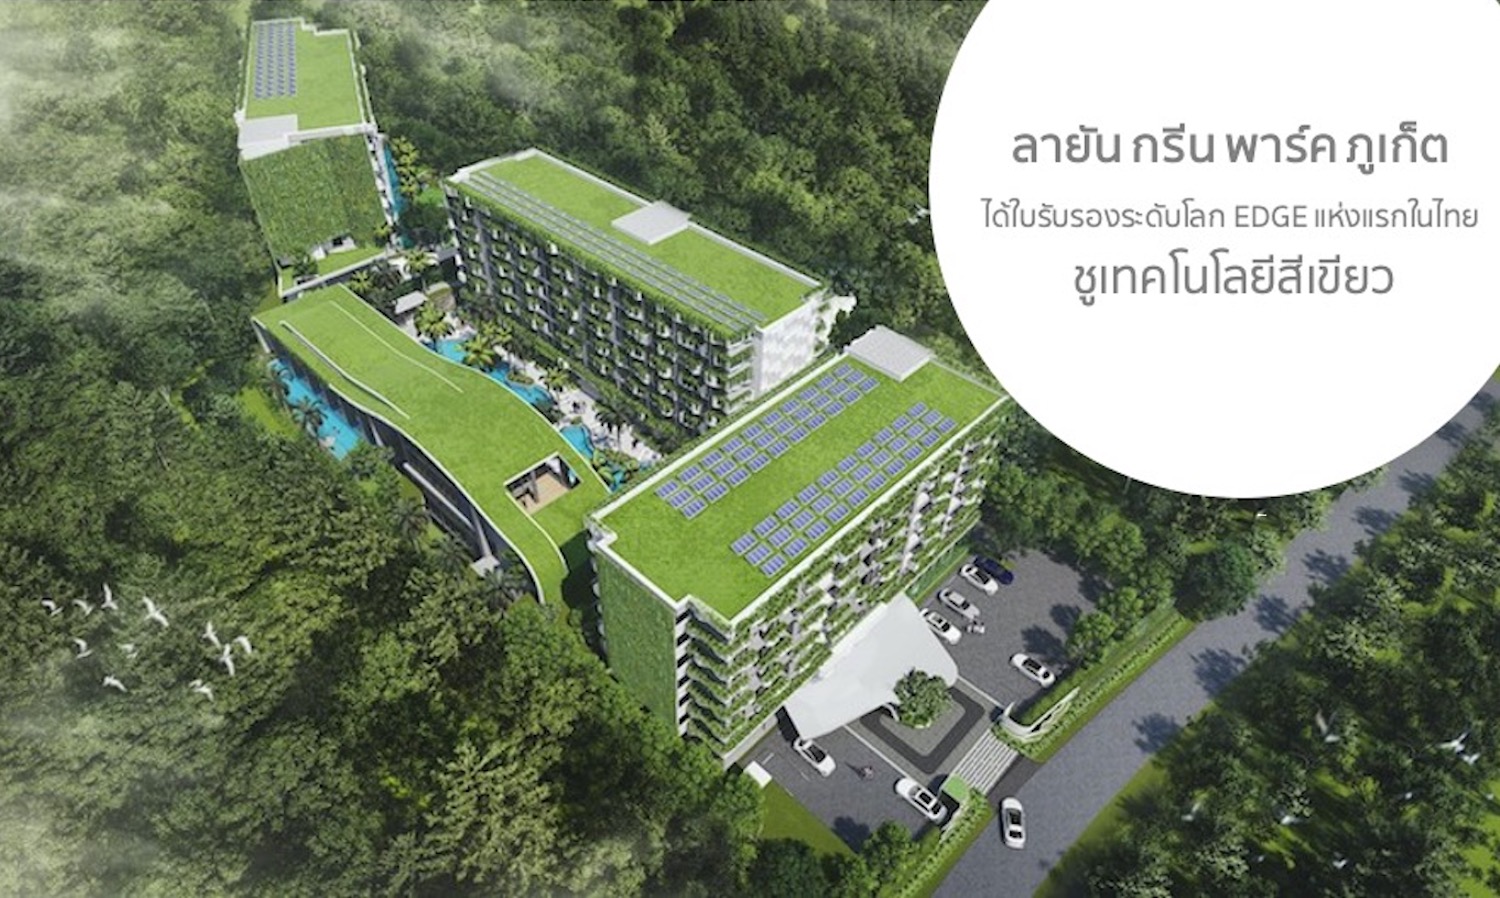 ลายัน-กรีน-พาร์ค-ภูเก็ต-ได้รับ-ใบรับรองระดับโลก-edge-แห่งแรกในไทย-ชู-เทคโนโลยีสีเขียว